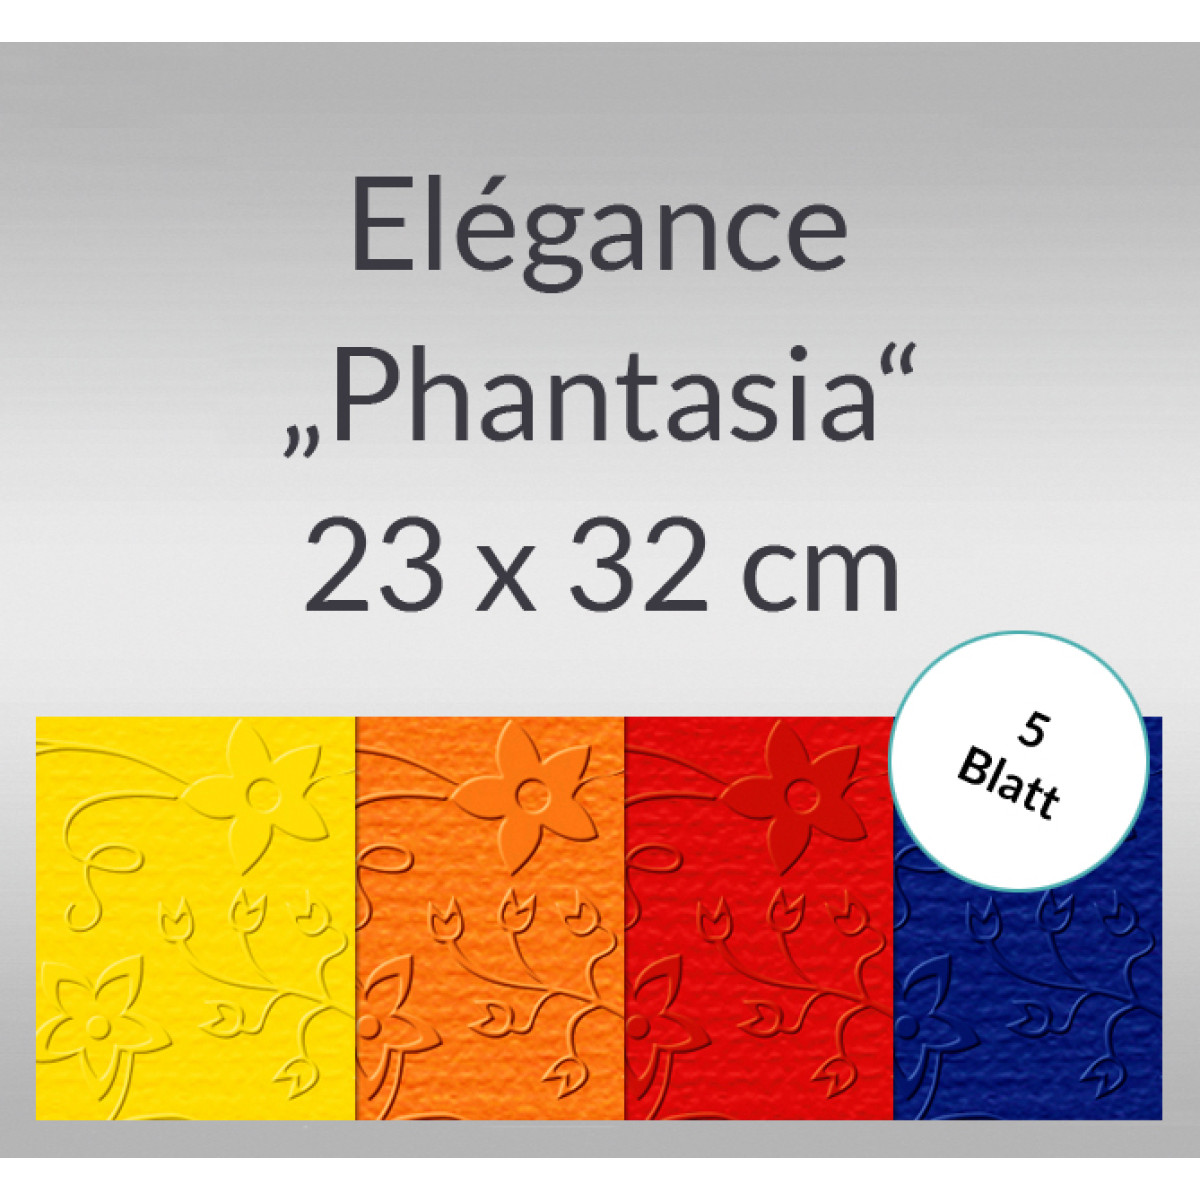 Elegance "Phantasia" 220 g/qm 23 x 32 cm - 5 Blatt